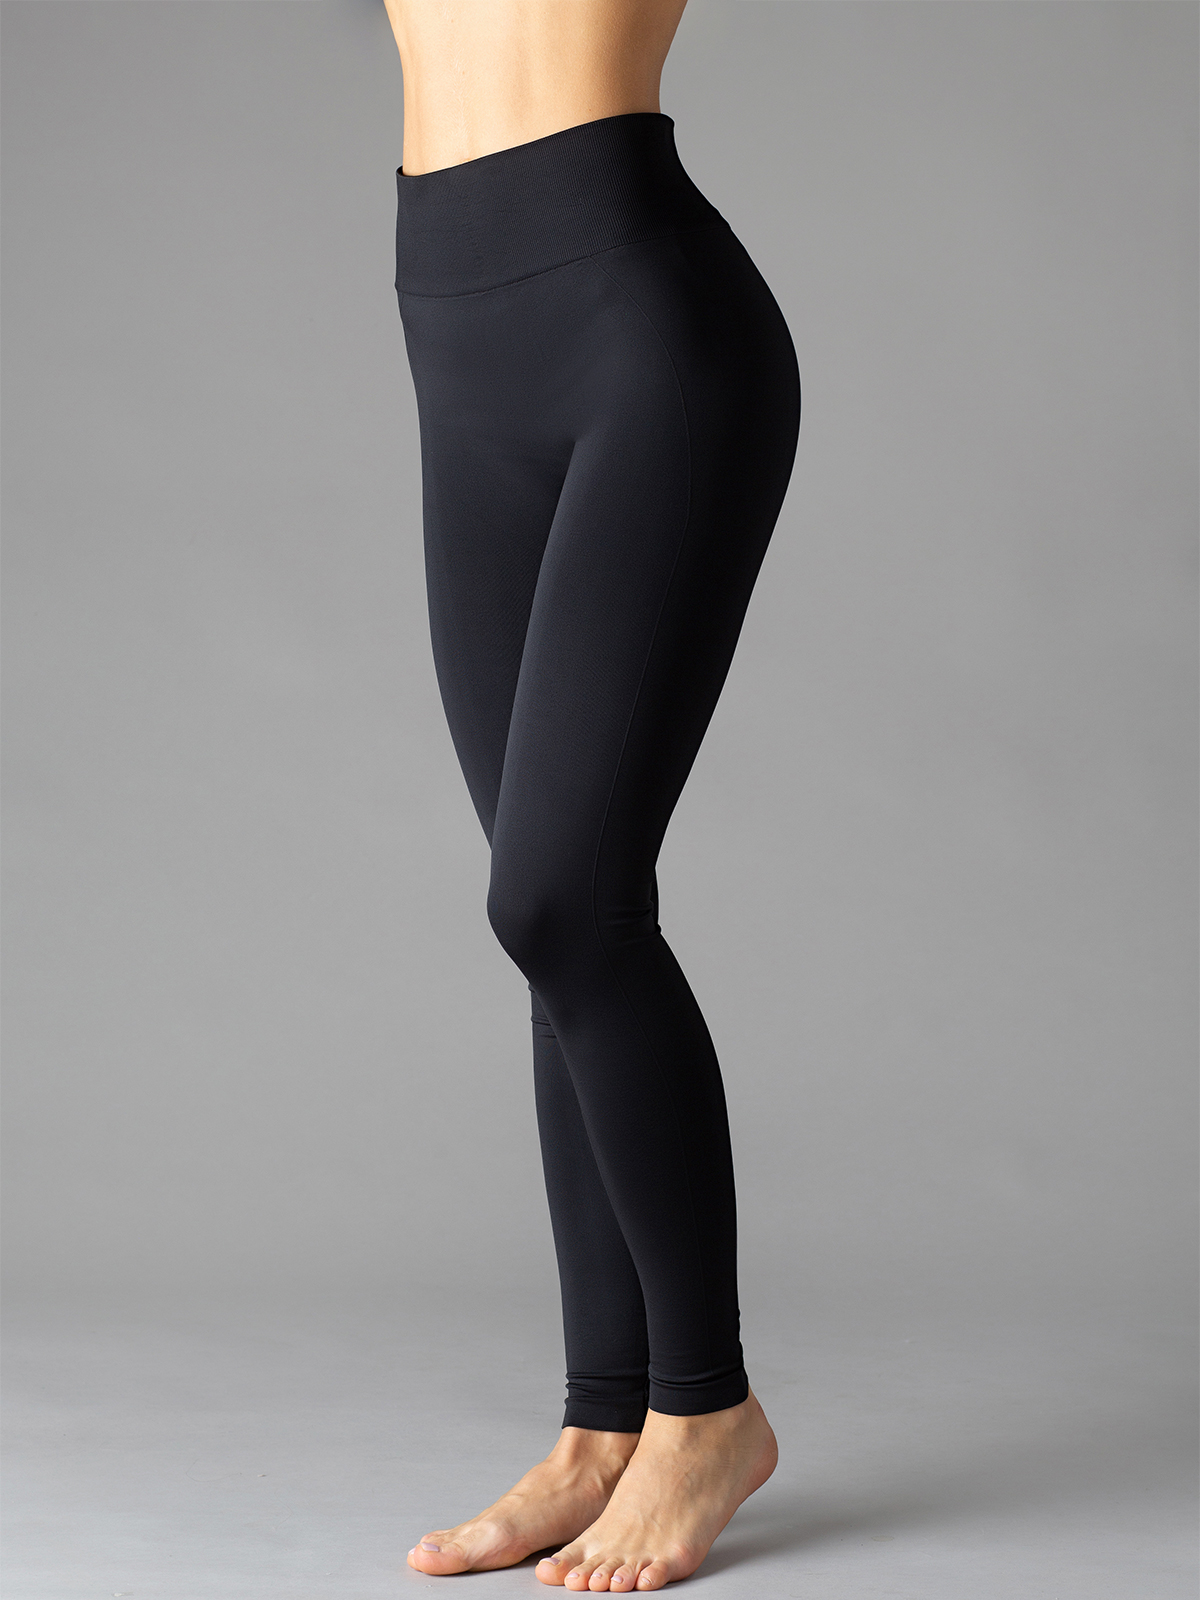 фото Леггинсы женские giulia leggings free черные s